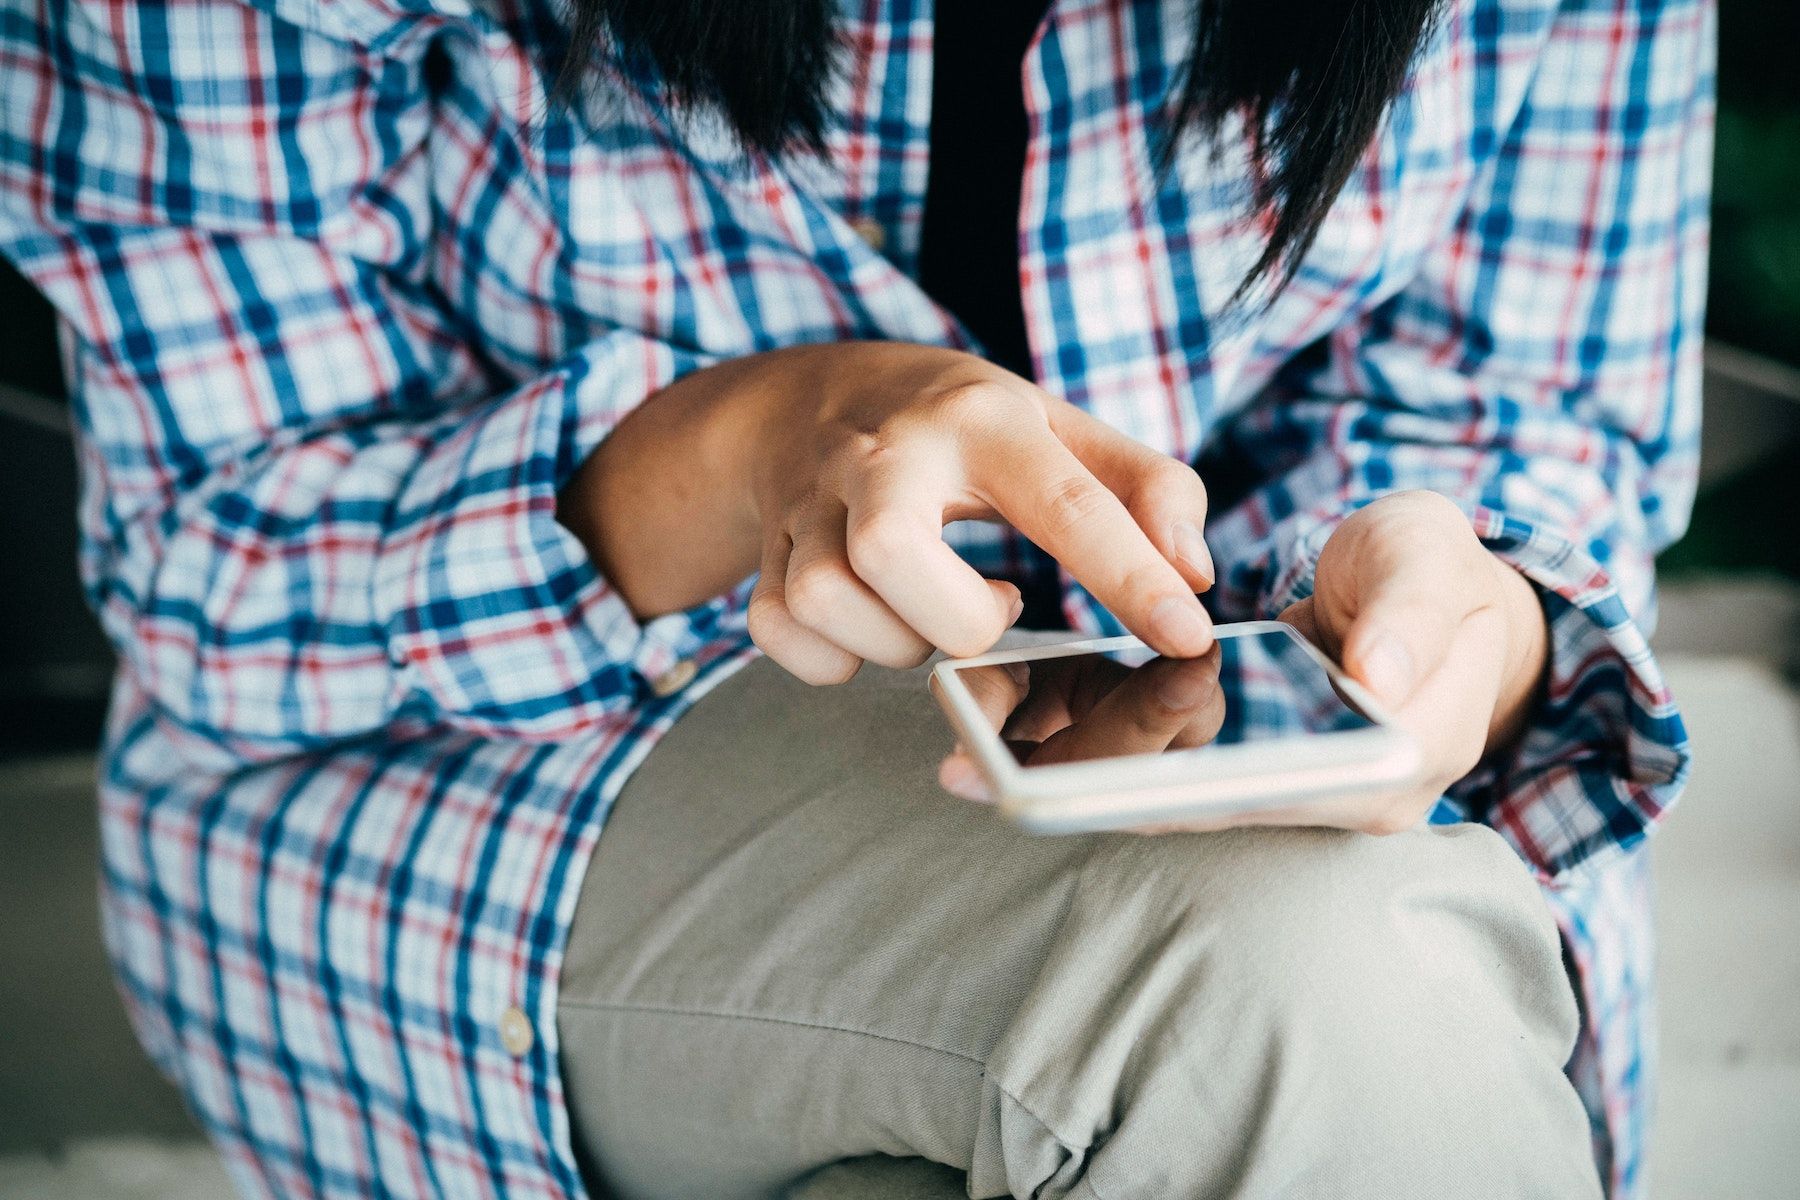 Uma pessoa vestindo uma camisa xadrez e calça cáqui segura um telefone na mão esquerda enquanto o dedo indicador direito toca na tela. 